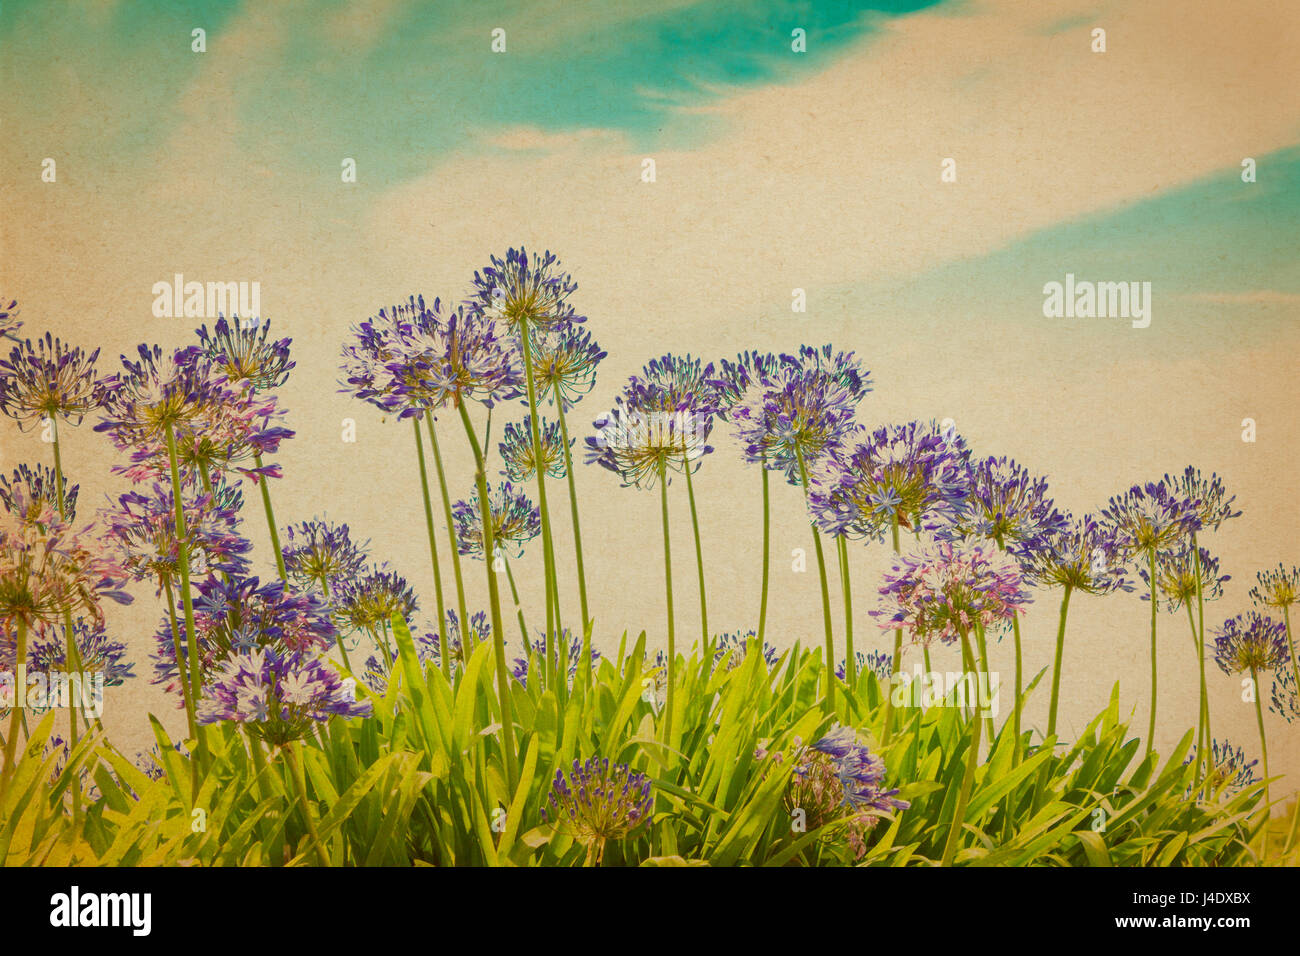 Viola agapanthus fiori in piena fioritura in una giornata di sole contro il cielo blu, vintage o retrò effetto filtro, copiare il testo space, nostalgico sfondo estivo Foto Stock